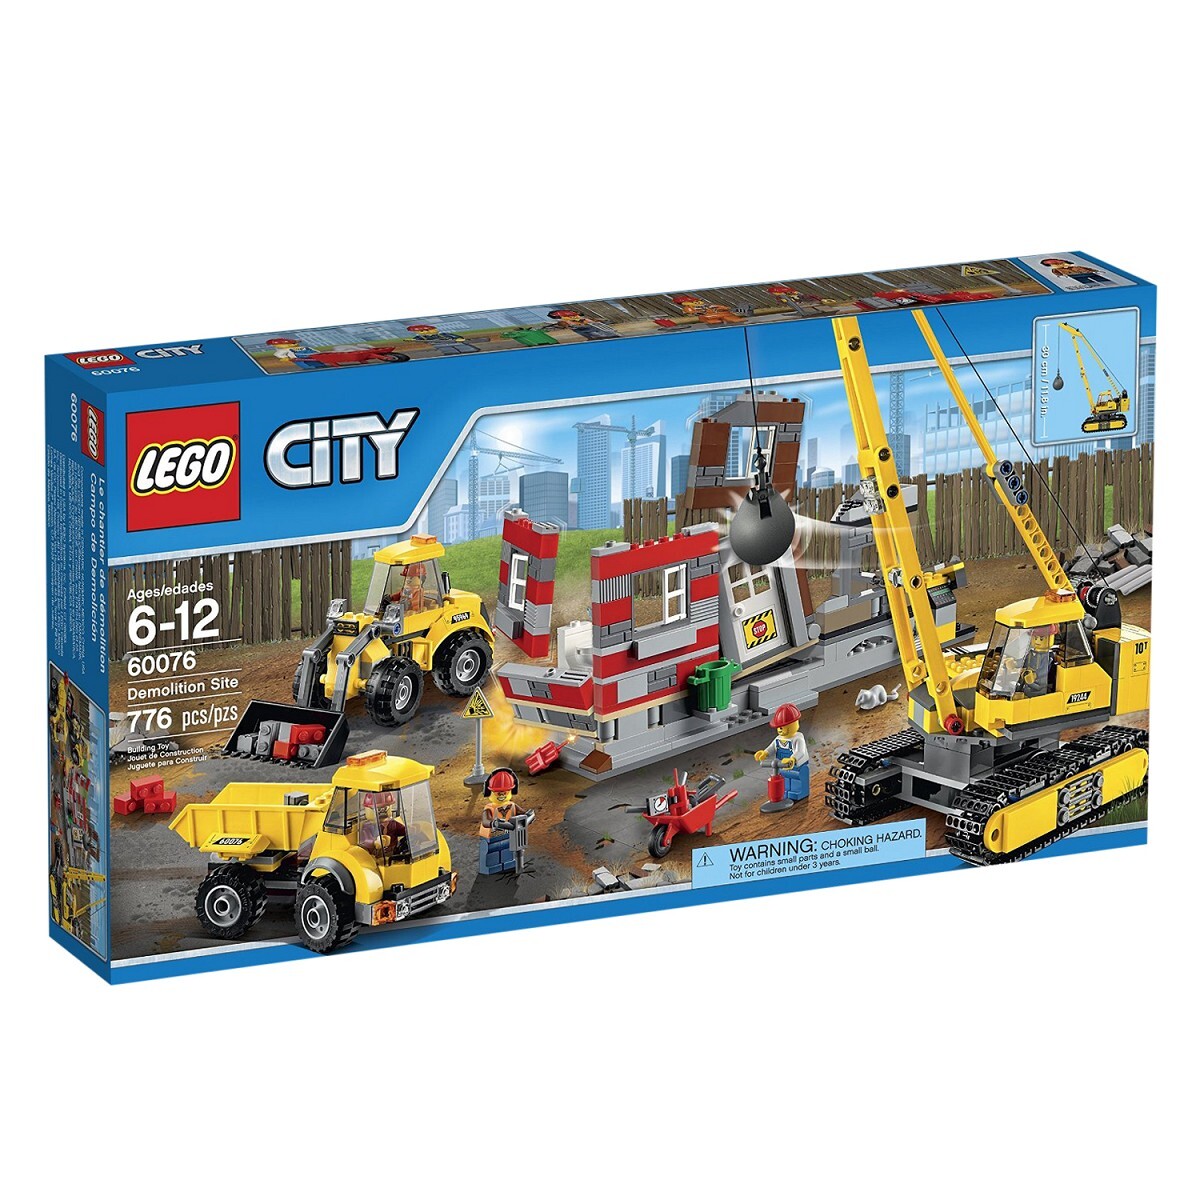 Đồ chơi Lego City - Công trường xây dựng Building site 60076